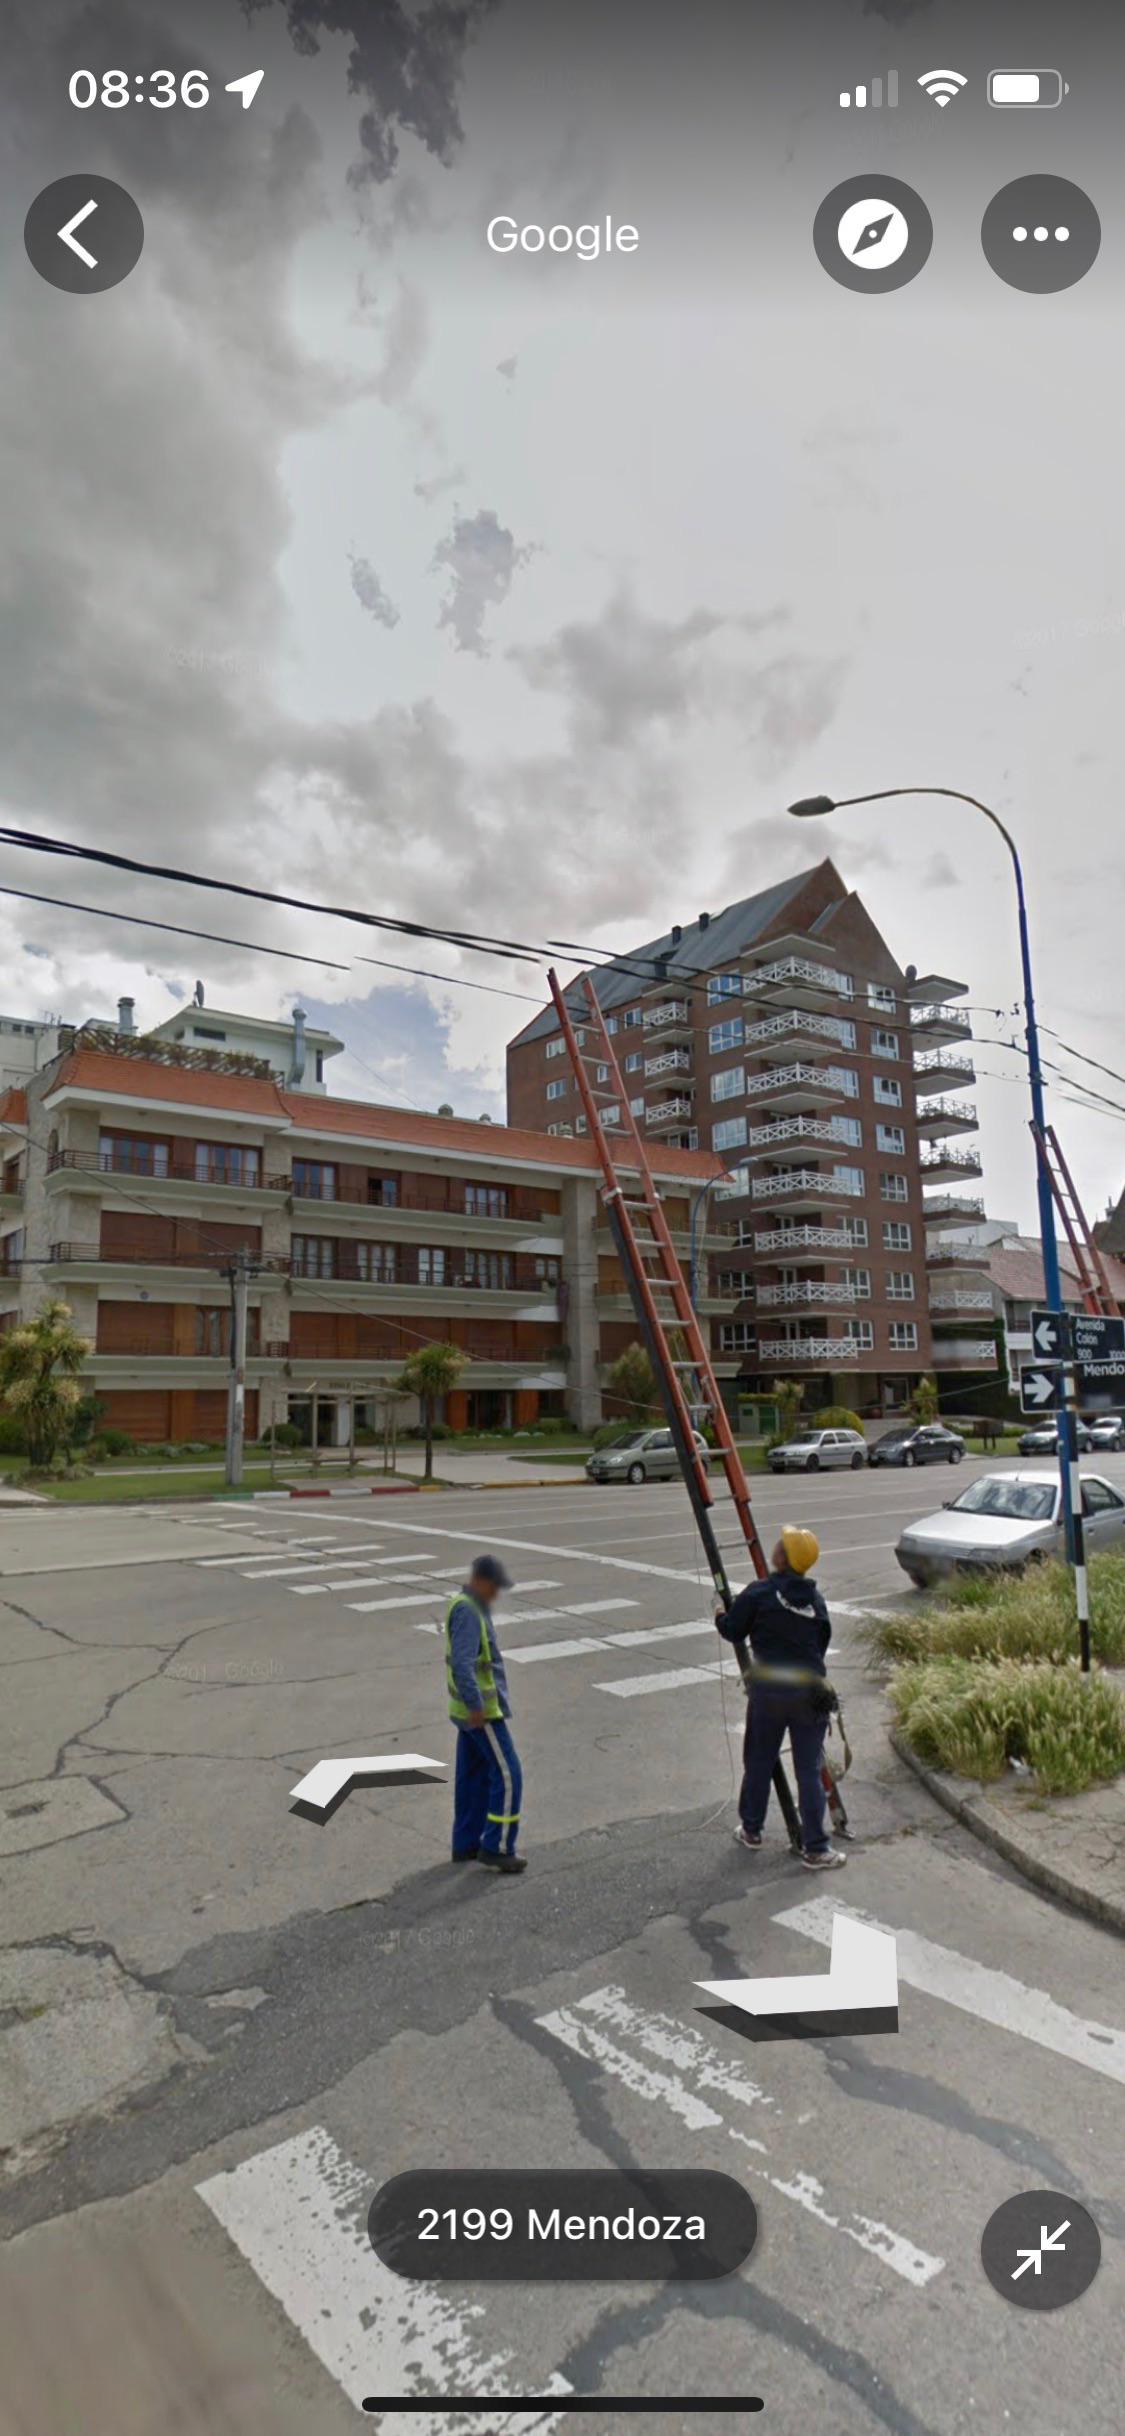 Mientras tanto, en el Google Street View de Argentina...